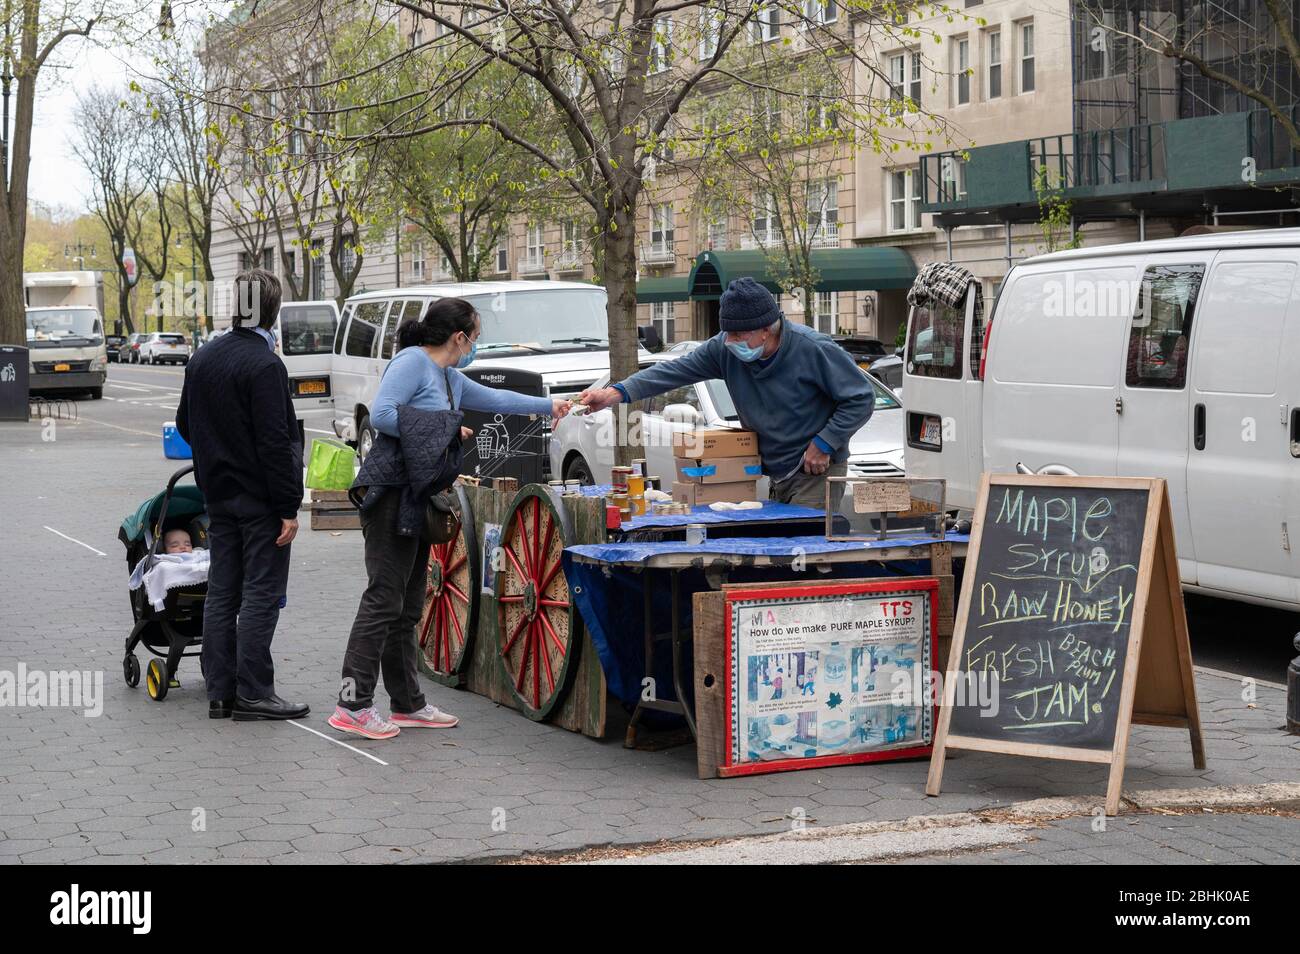 Nueva York, NY, EE.UU. 19 de abril de 2020. Vendore vende jarabe de arce y miel en el lado Alto Oeste de Manhattan durante la pandemia del Coronavirus. Foto de stock